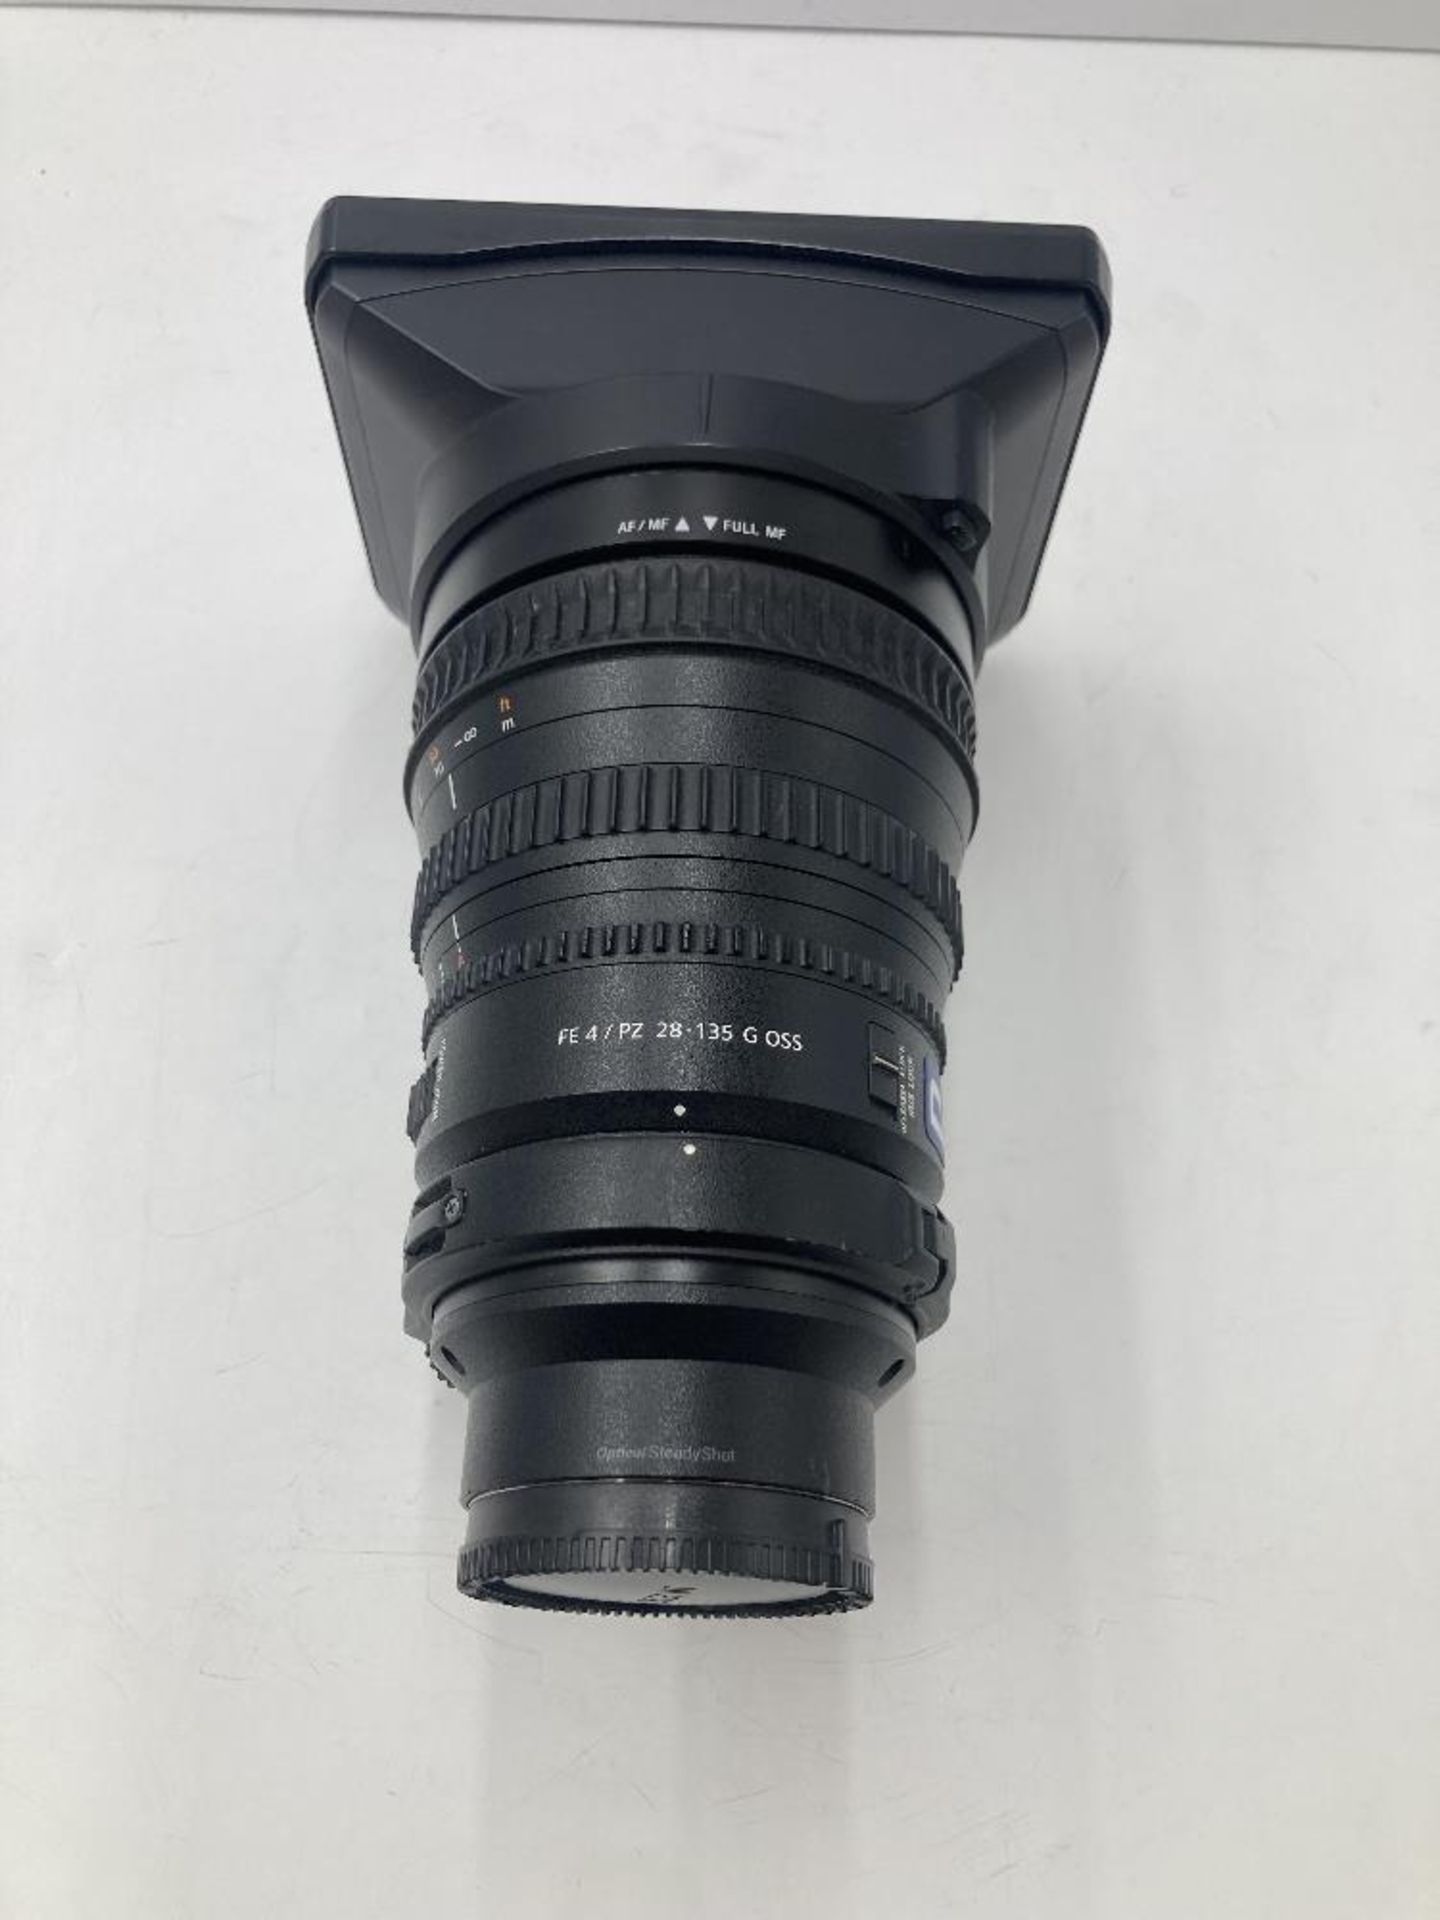 Sony E Mount FE 4/PZ 28-135mm G OSS Zoom Lens & Sony ALC-SH135 Lens Hood - Image 6 of 6